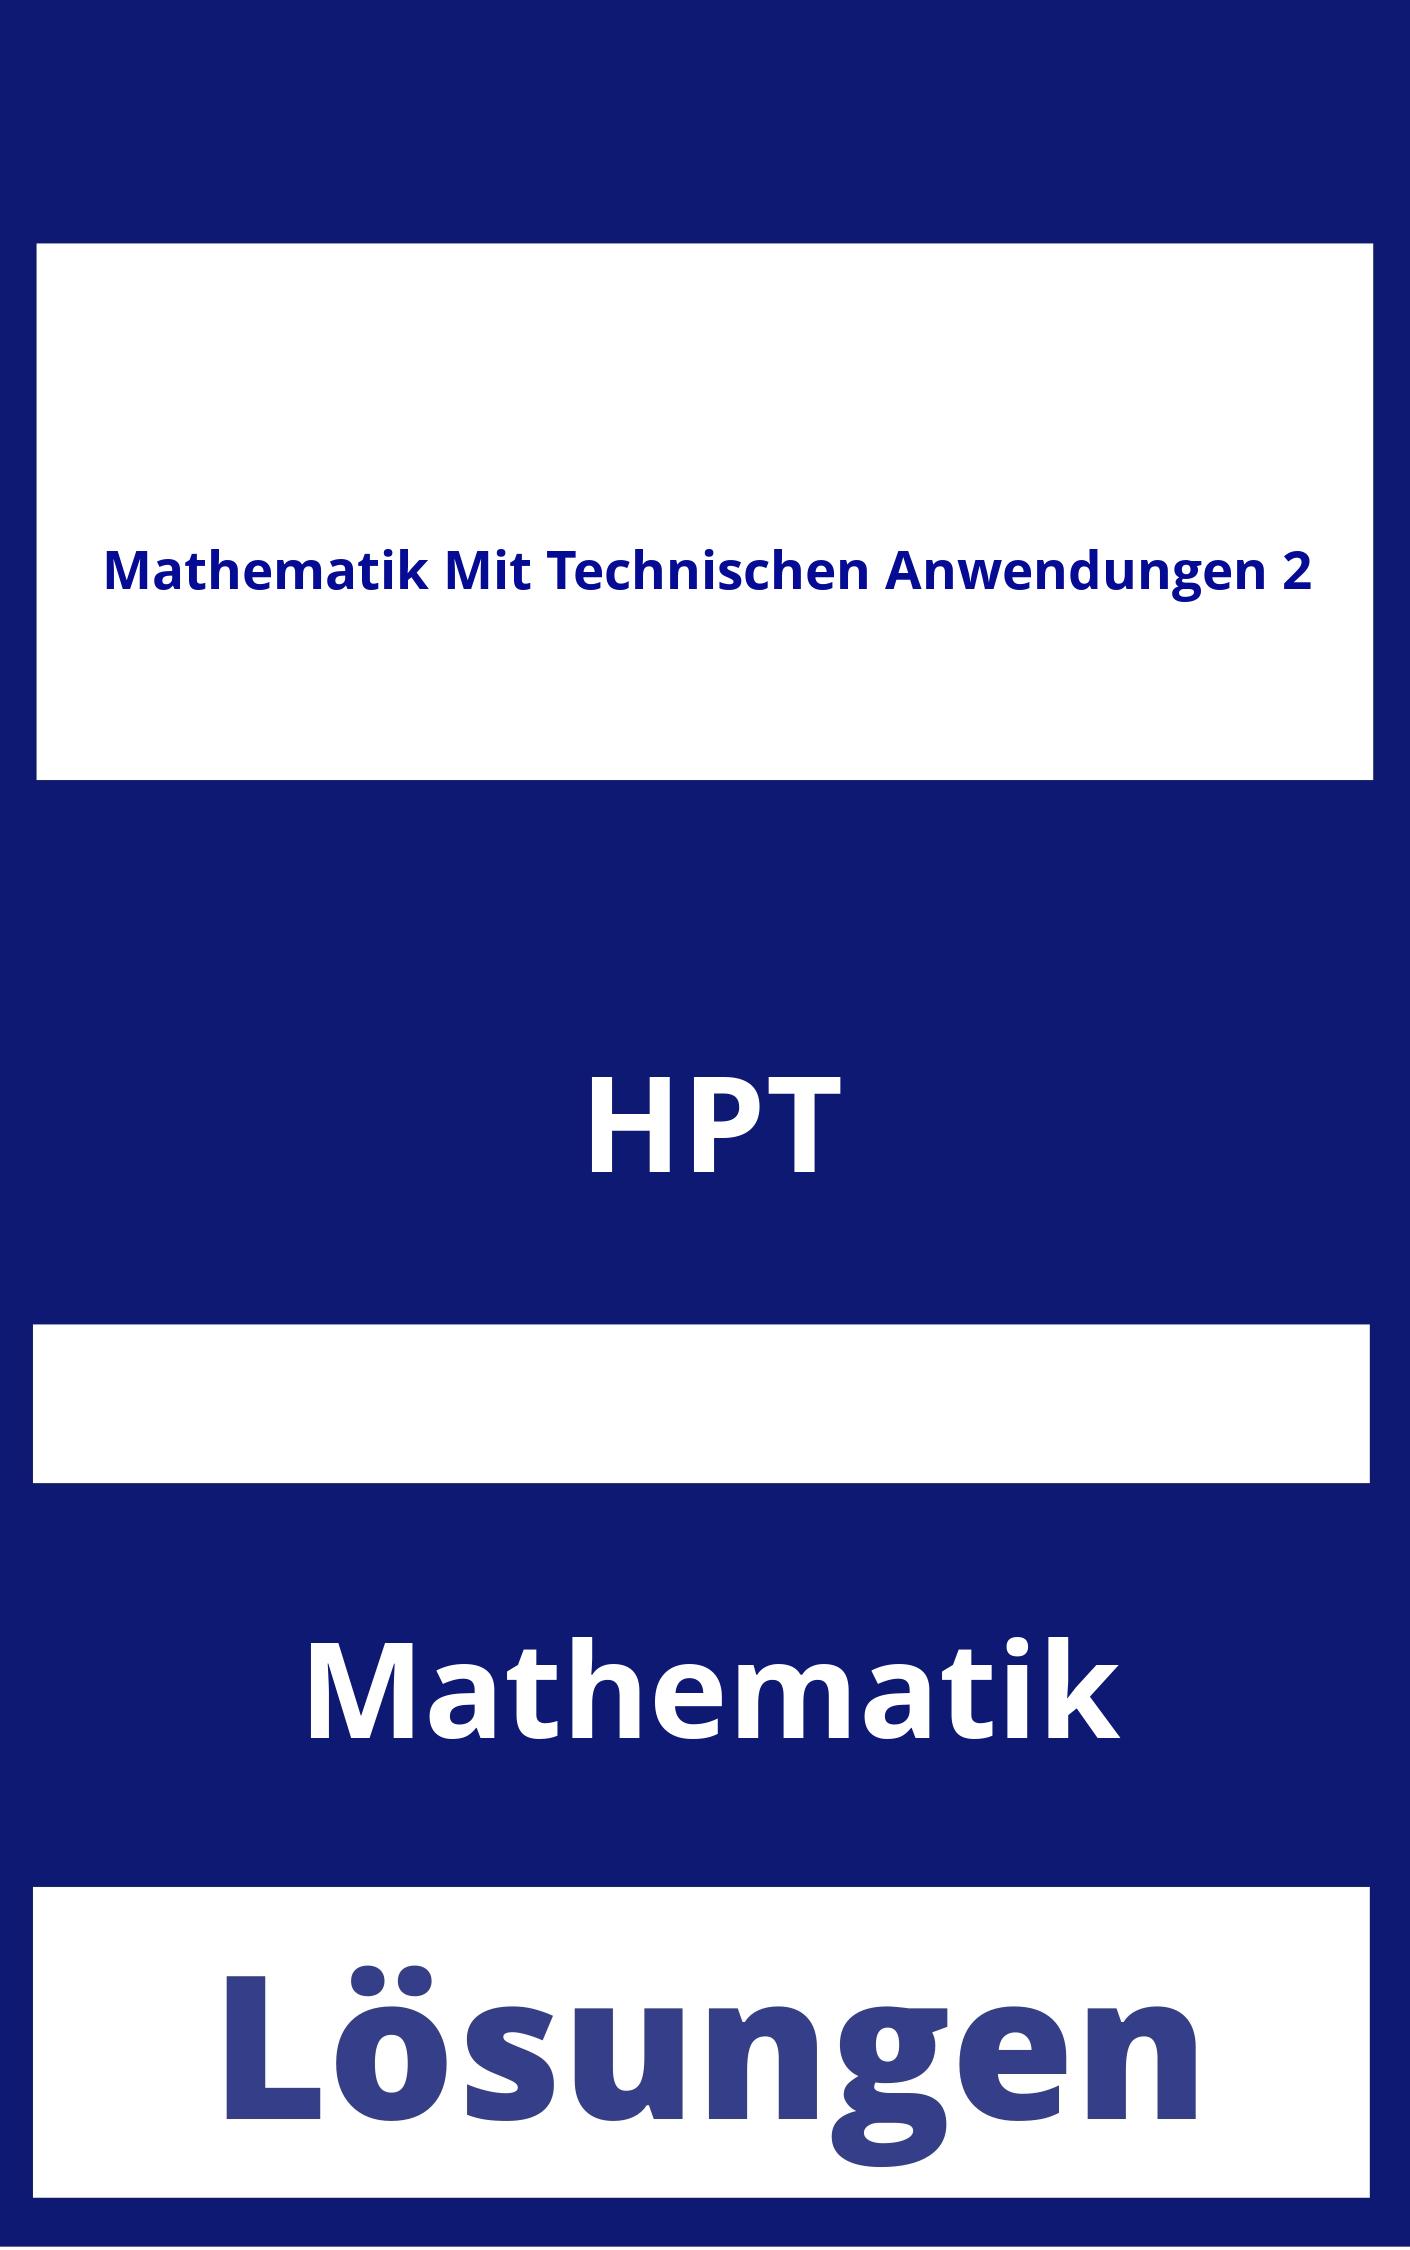 Mathematik Mit Technischen Anwendungen 2 Lösungen PDF